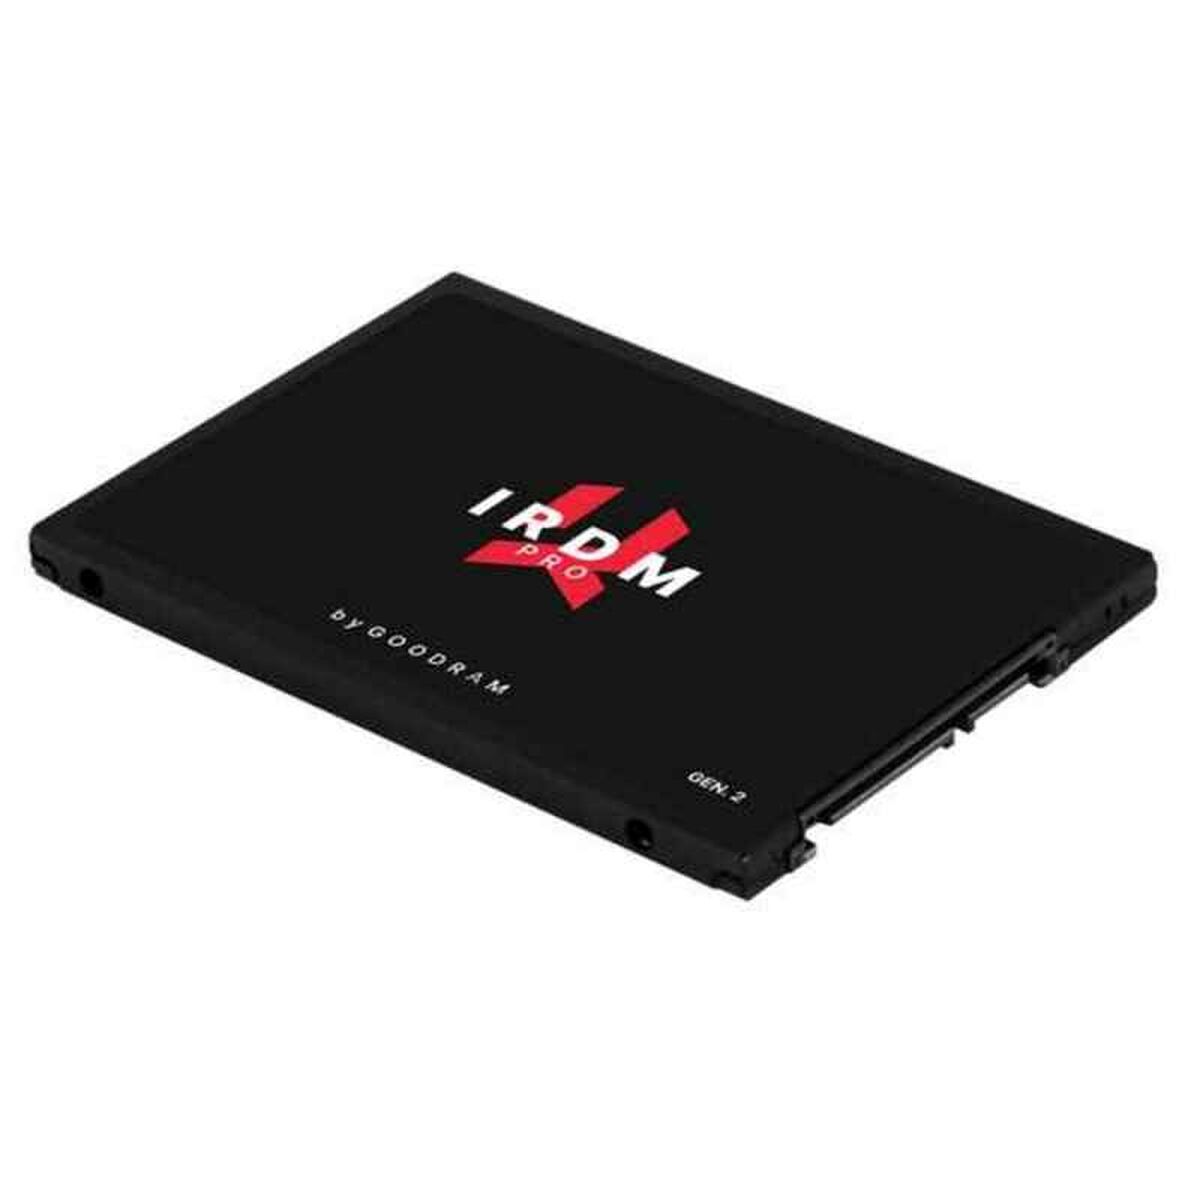 Hard Drive GoodRam IRDM PRO gen. 2 555 MB/s Internal SSD TLC 3D NAND 1 TB SSD